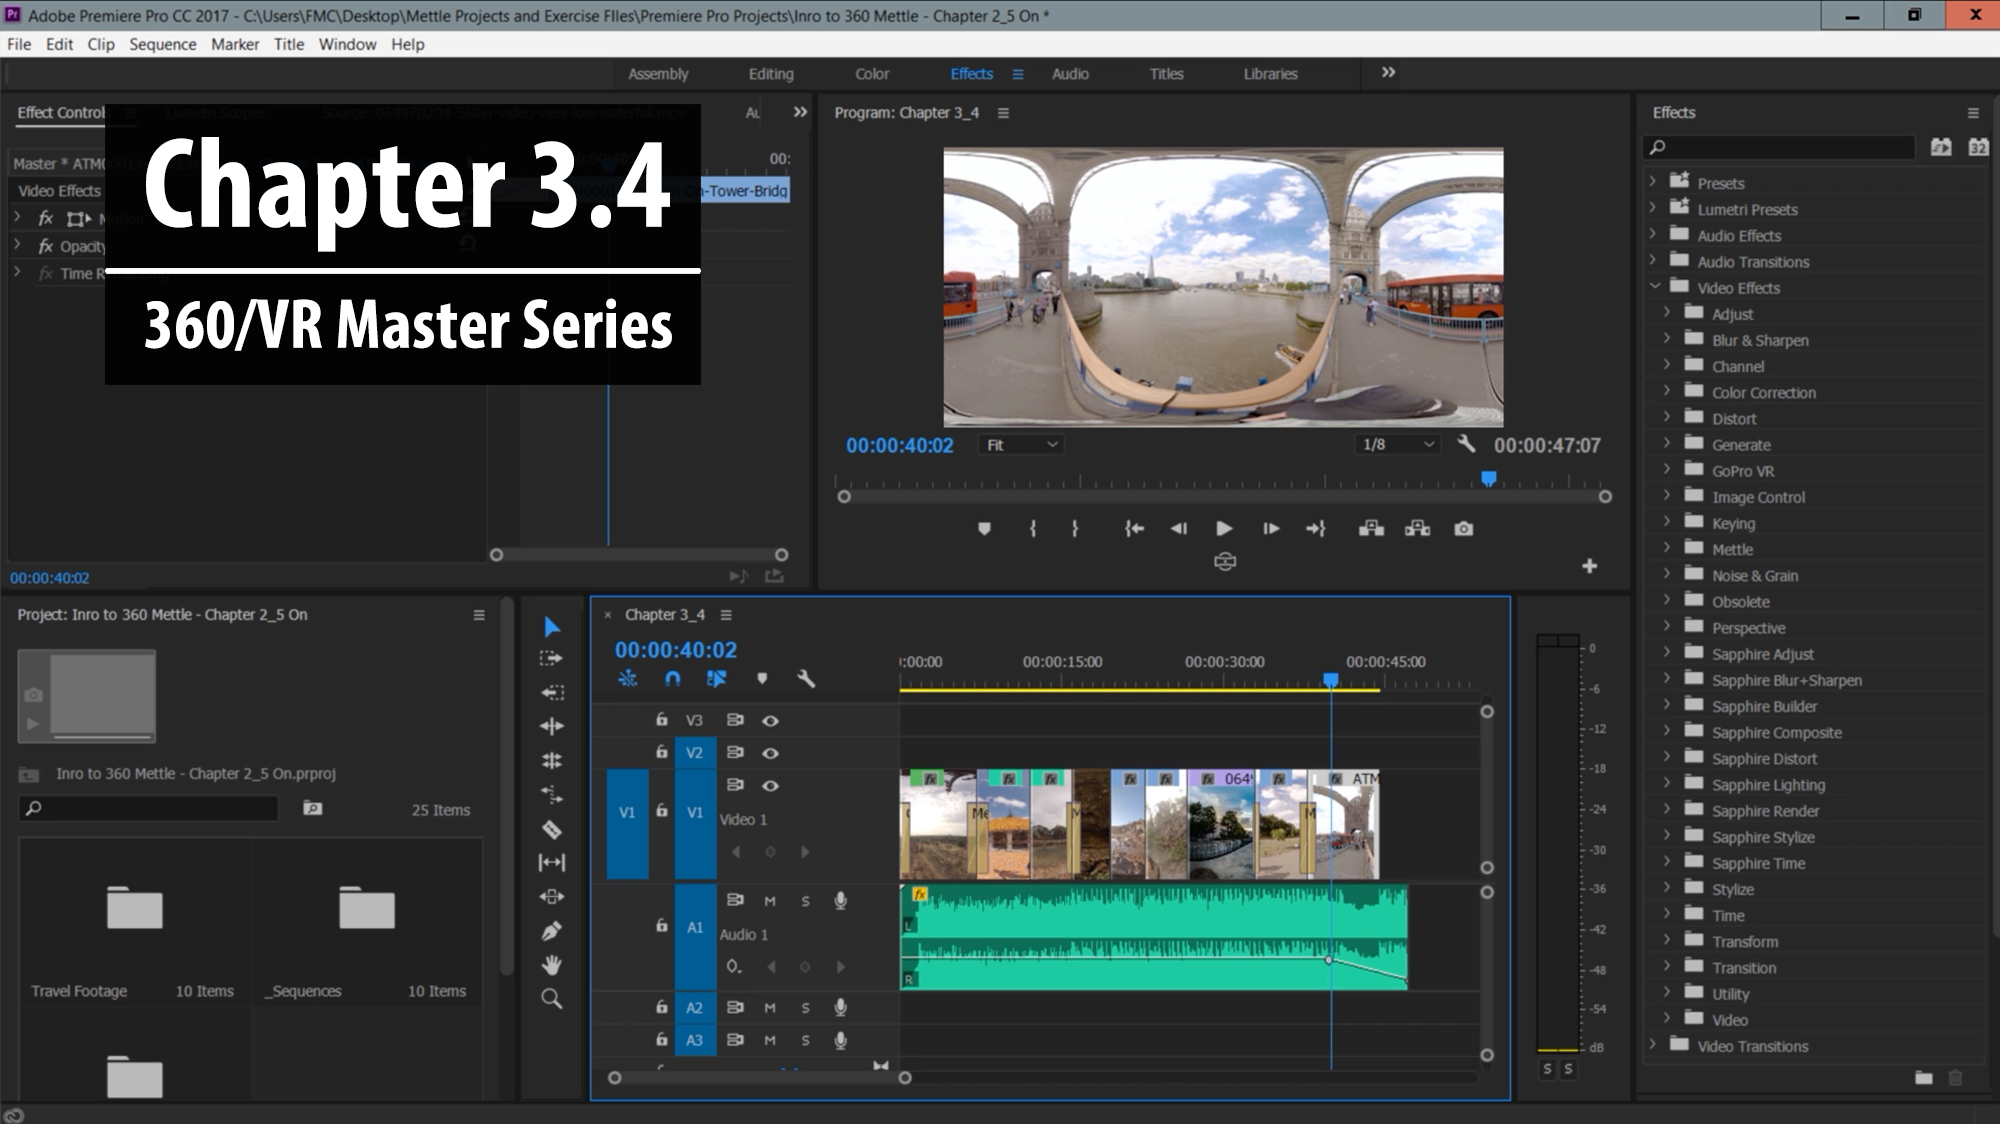 Post fx. Logo 360 VR премьер про. Screenshot Premiere Pro after Effects. Youtube Mega Pack Premiere Pro. Mantra v2 Adobe after.